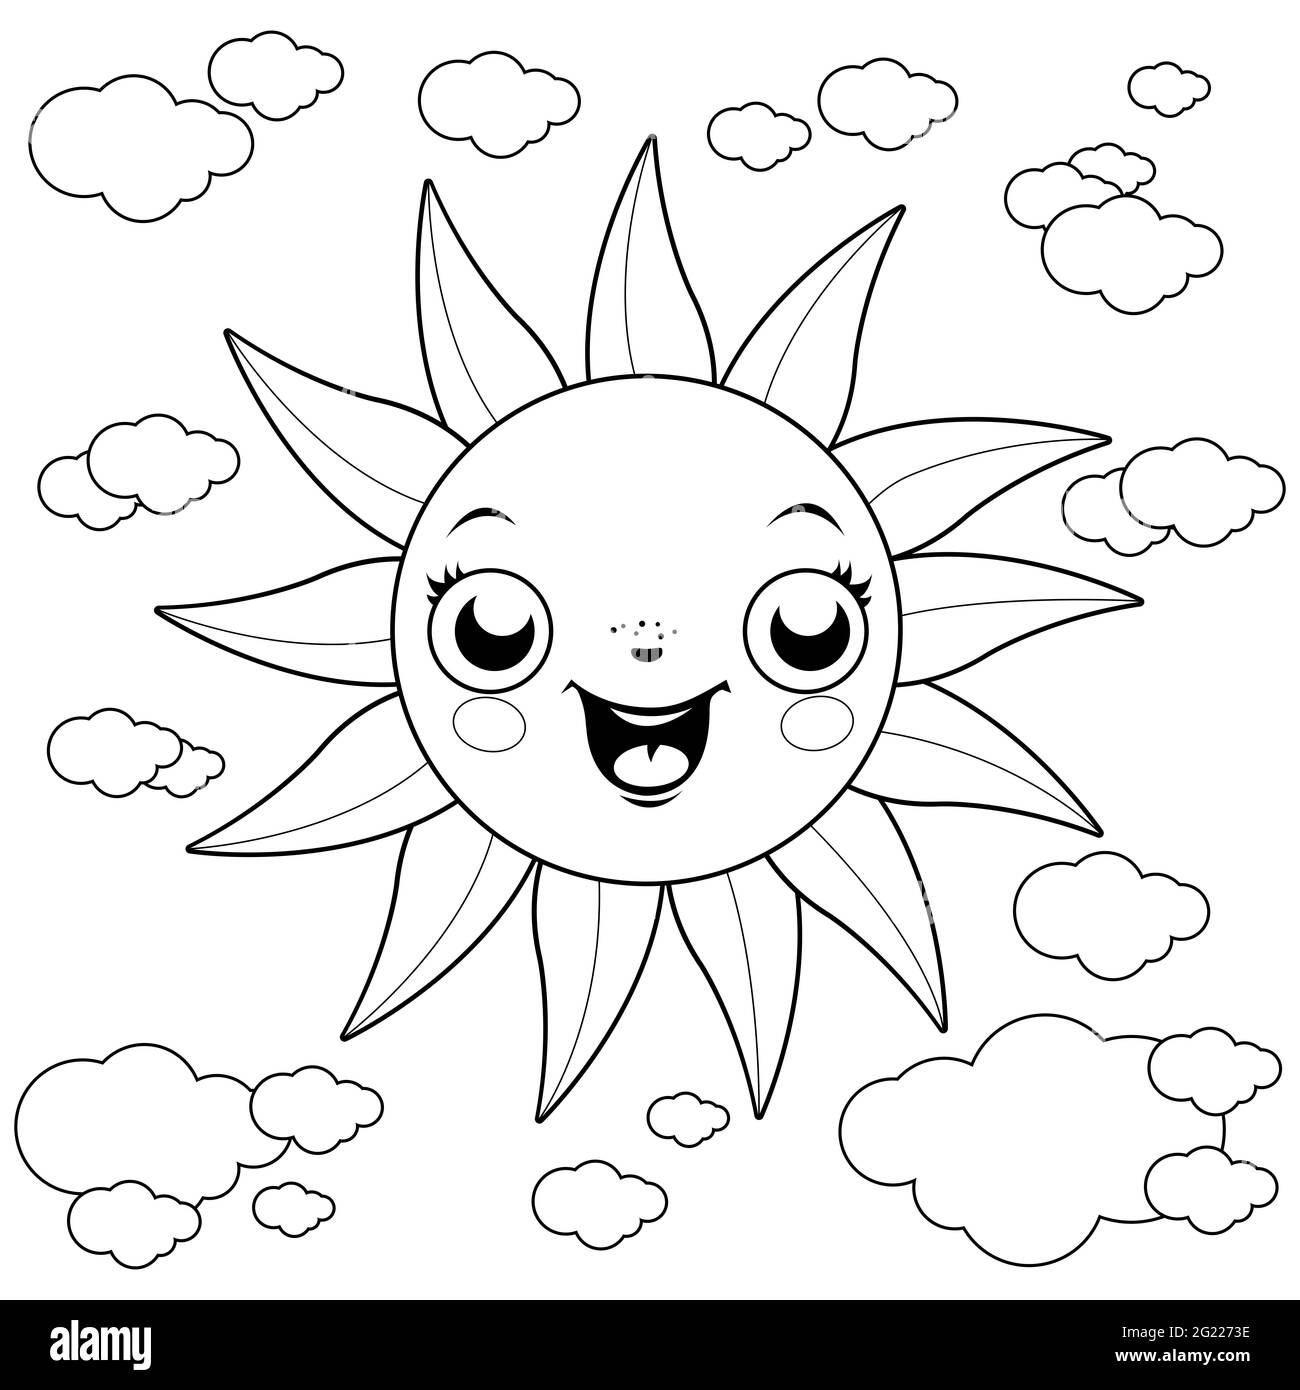 Illustration de dessin animé d'un soleil et de nuages au ciel. Page de couleur noir et blanc. Banque D'Images